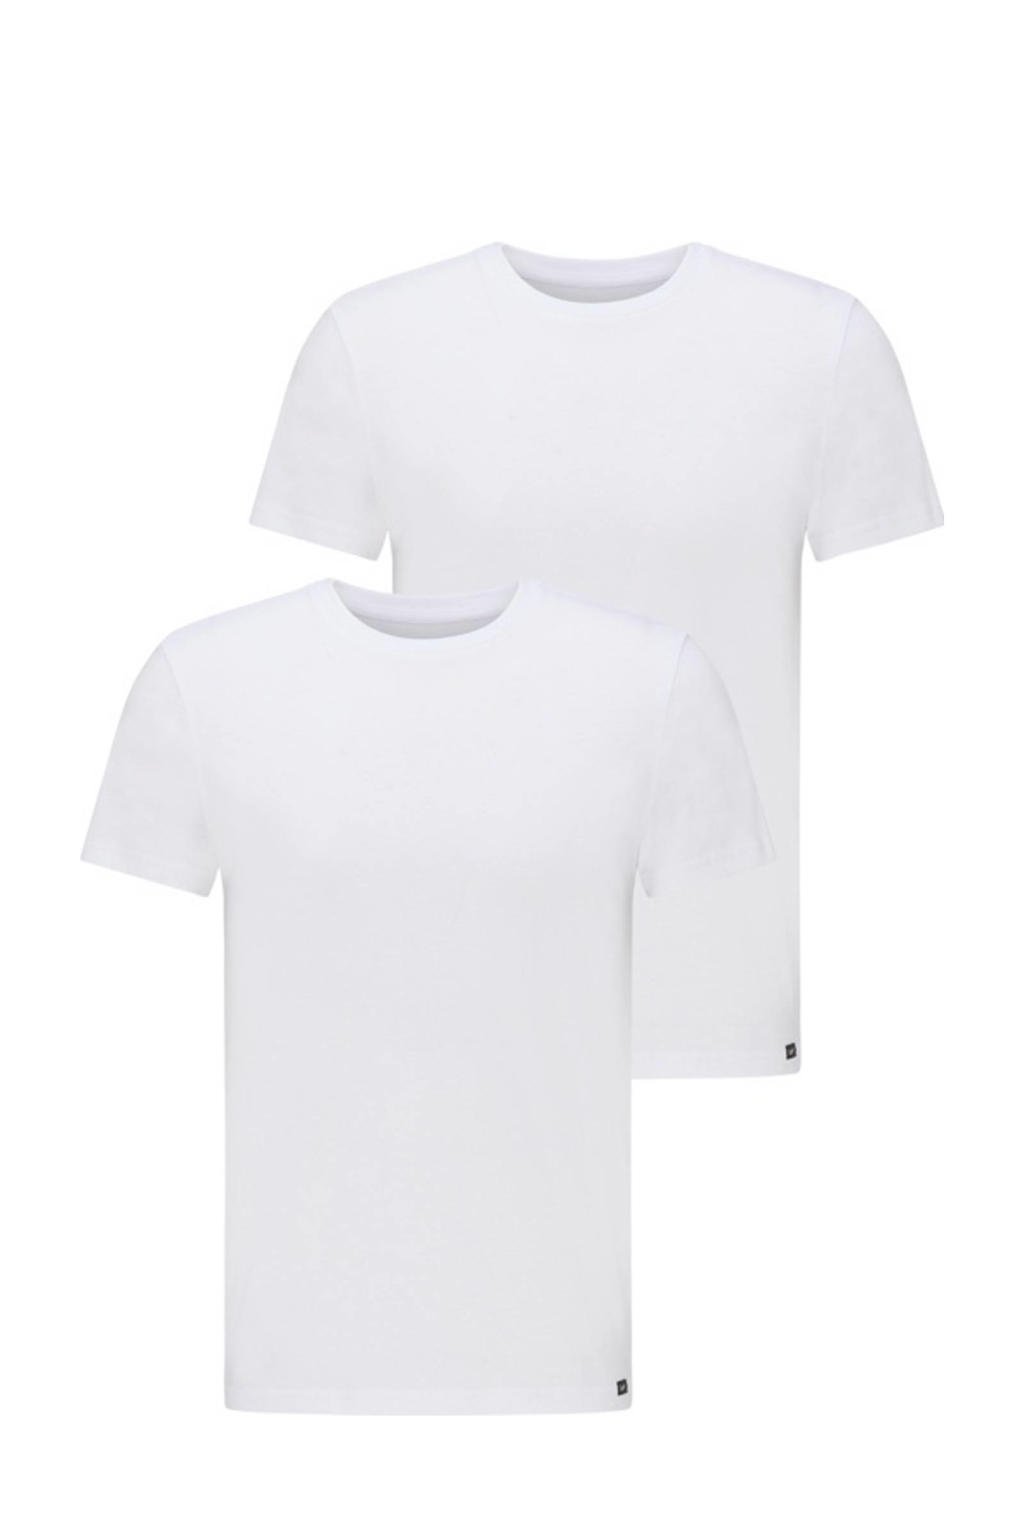 Lee T-shirt (set van 2) wit